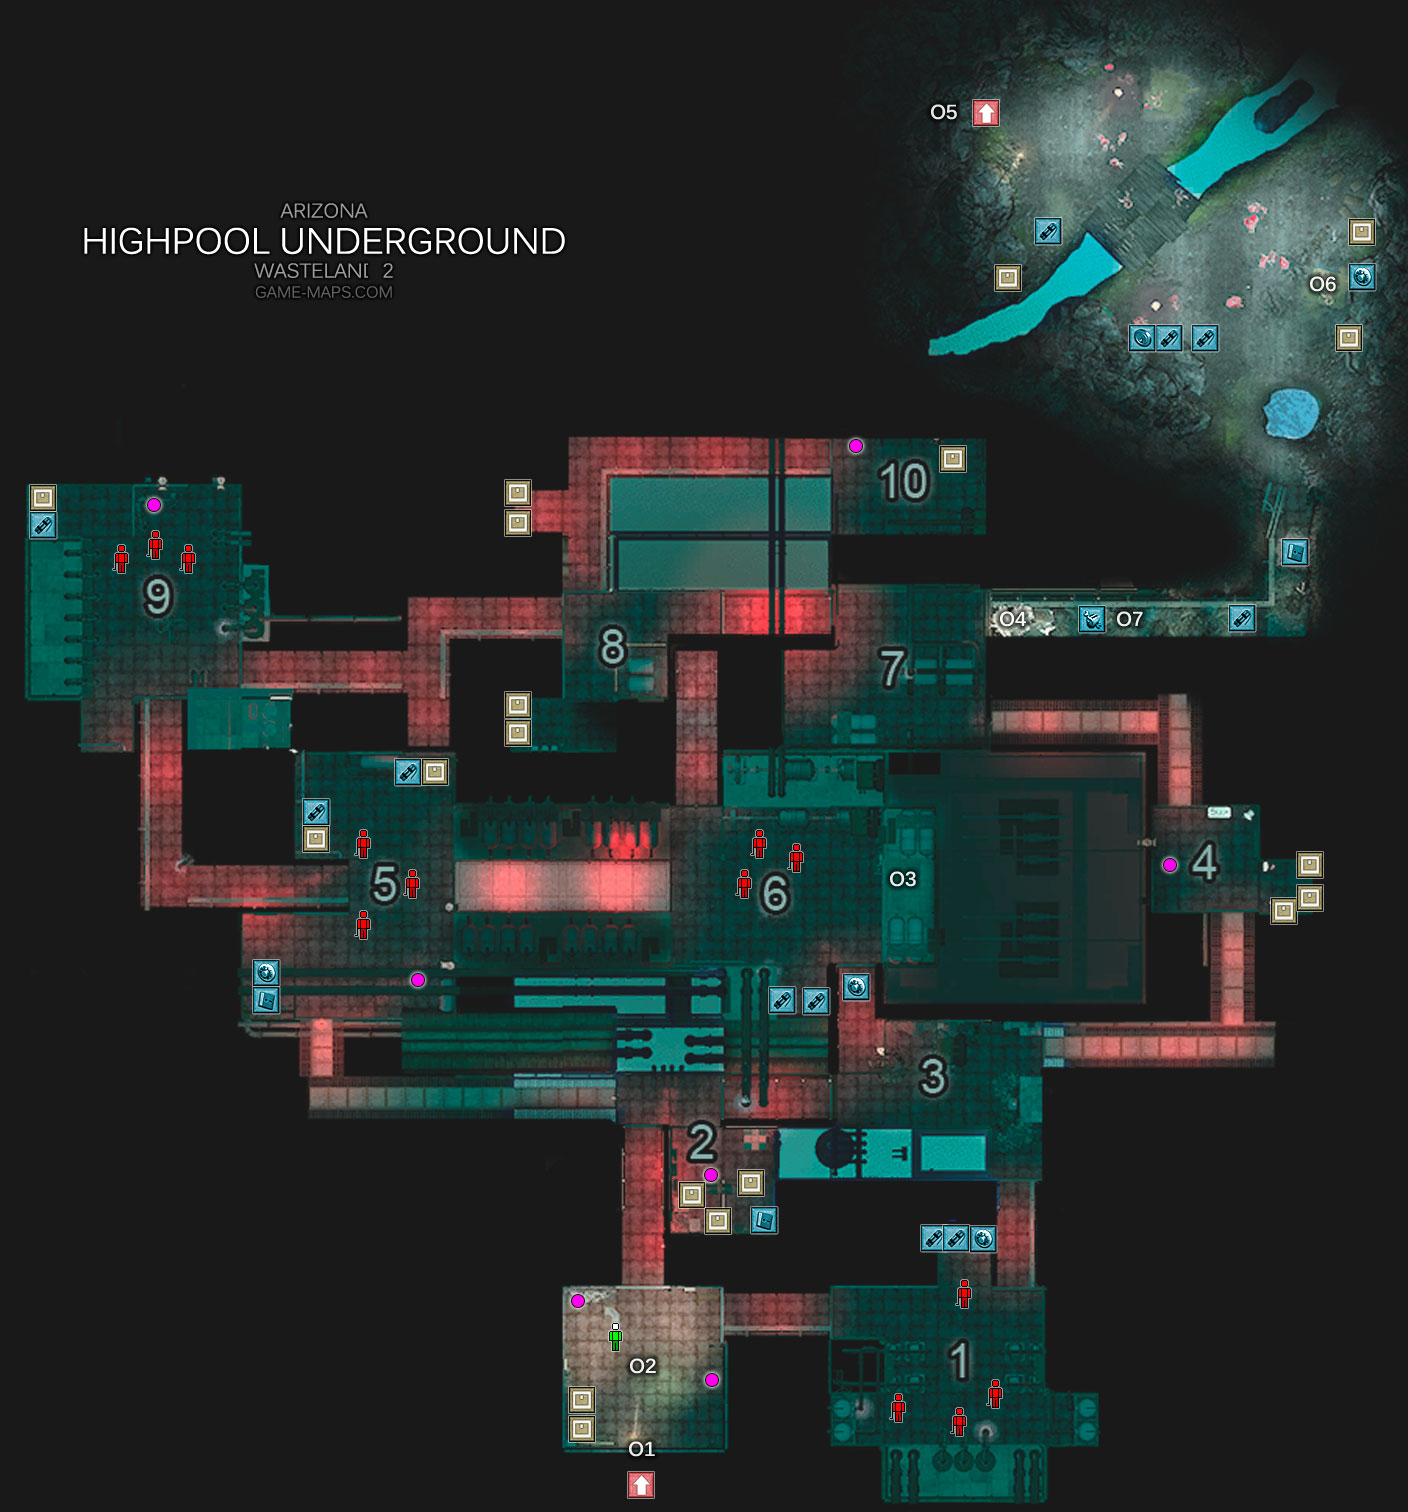 Highpool Underground Map - Arizona - Wasteland 2